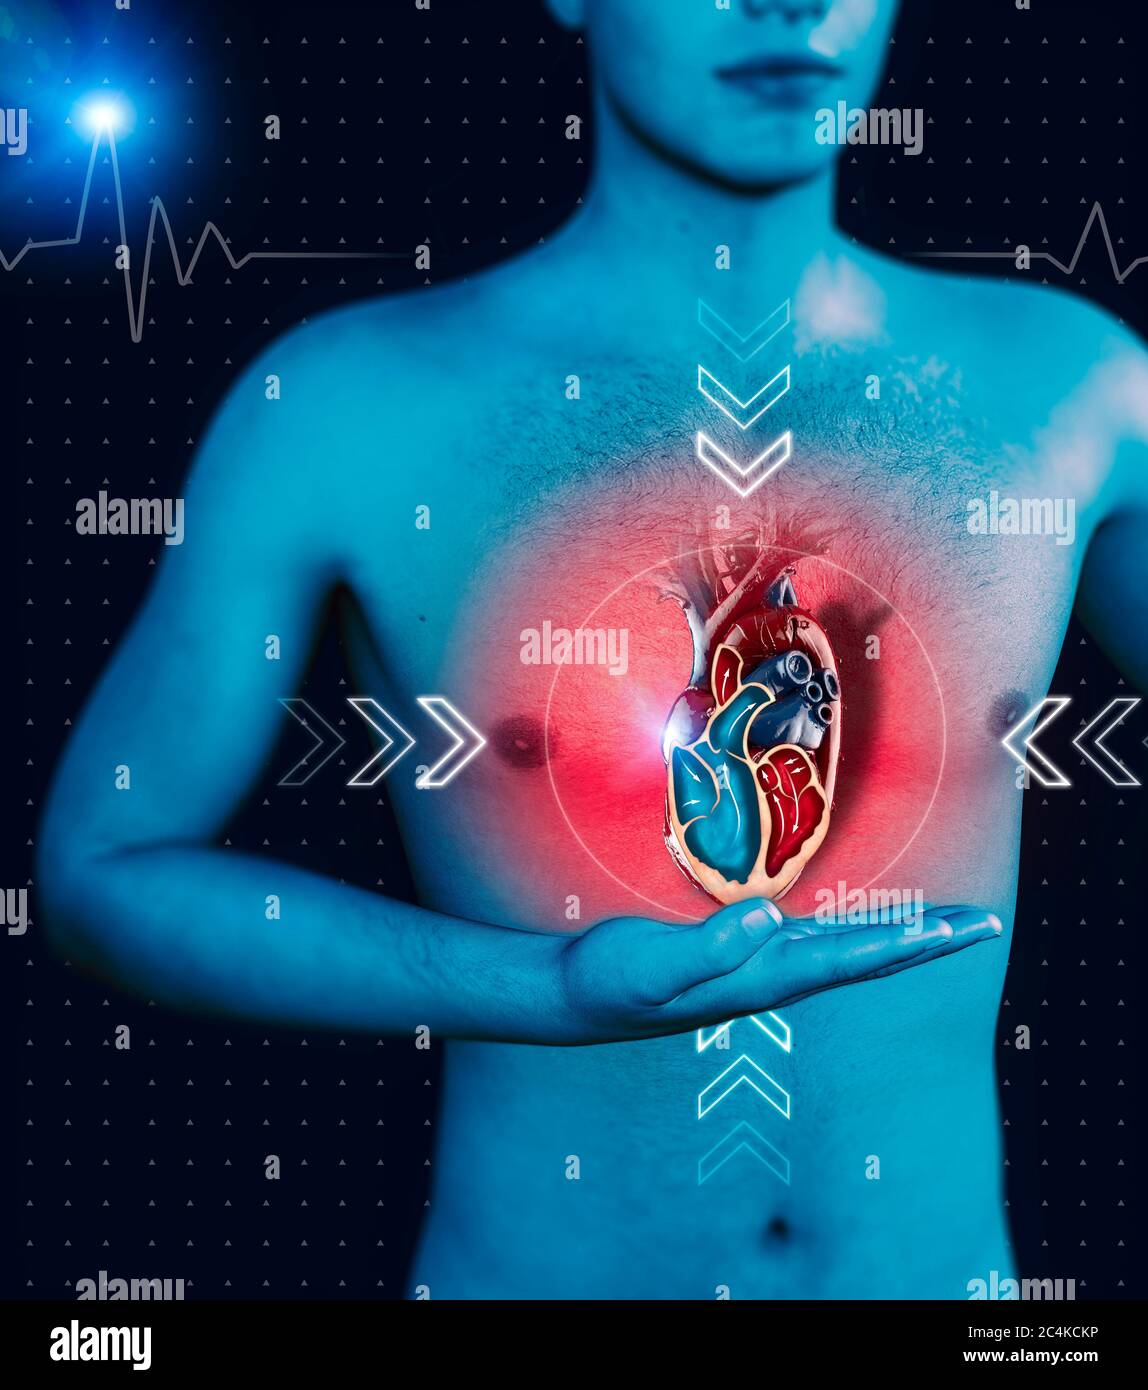 Mensch und Herz, menschliche Anatomie, Herzschlag und Angriff. Kardiologische Untersuchung, kardialer Betrieb. 3d-Rendering Stockfoto